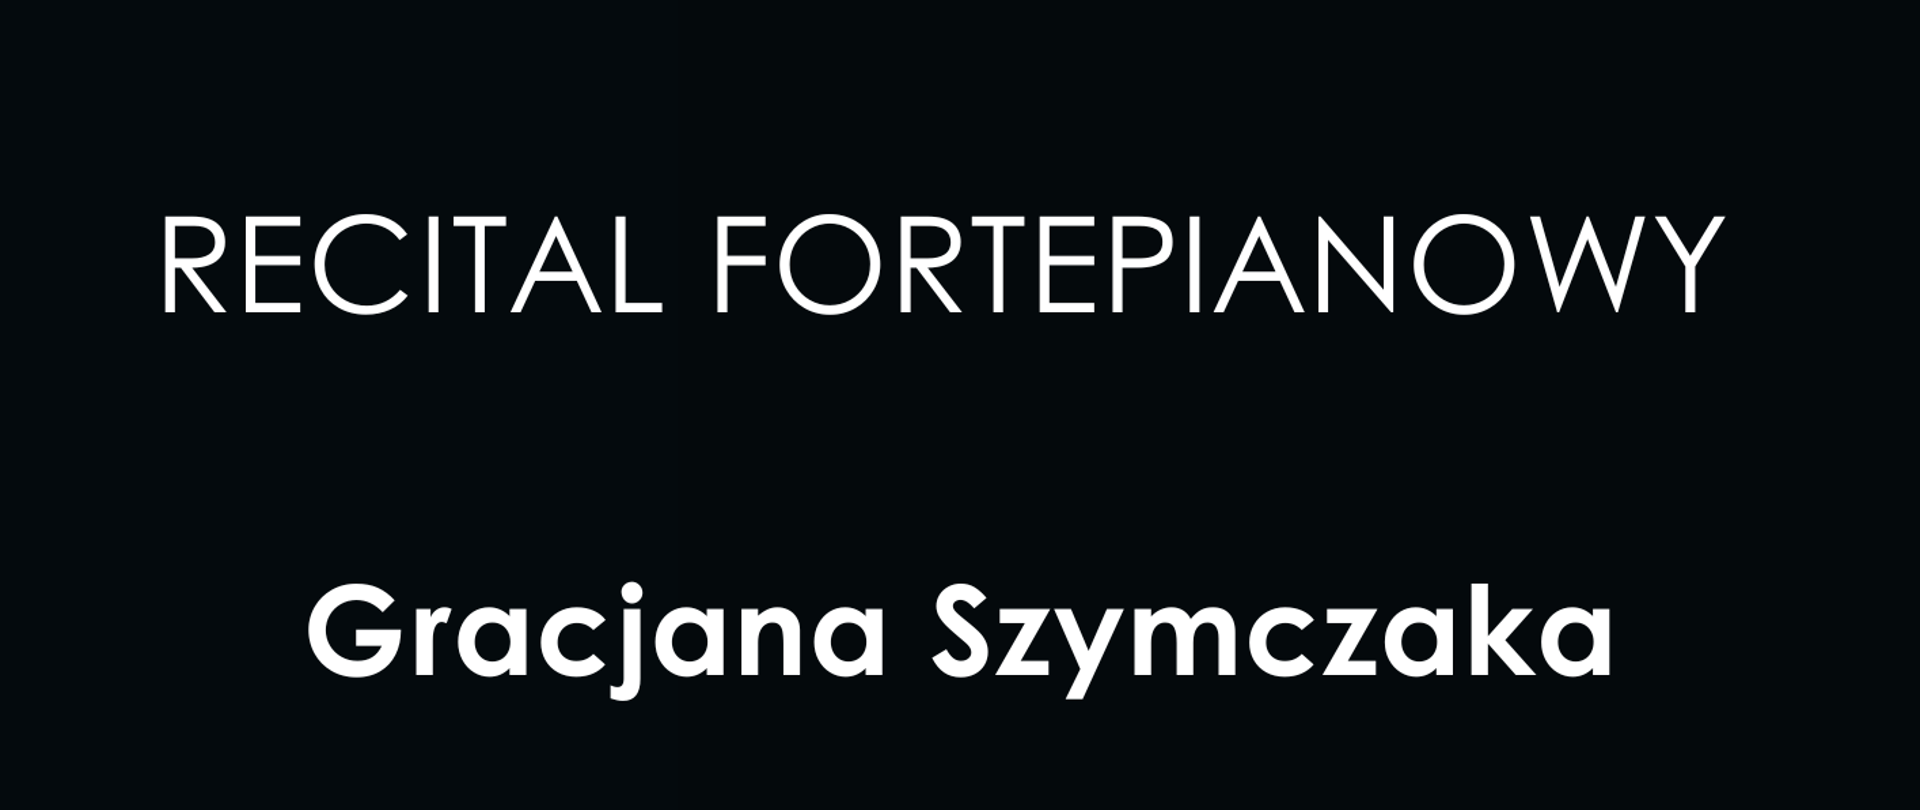 Recital Fortepianowy Gracjana Szymczaka, klawiatura fortepianu, logotypy Miasta Zgorzelec, Powiatu Zgorzeleckiego, Gminy Zgorzelec oraz PSM Zgorzelec.